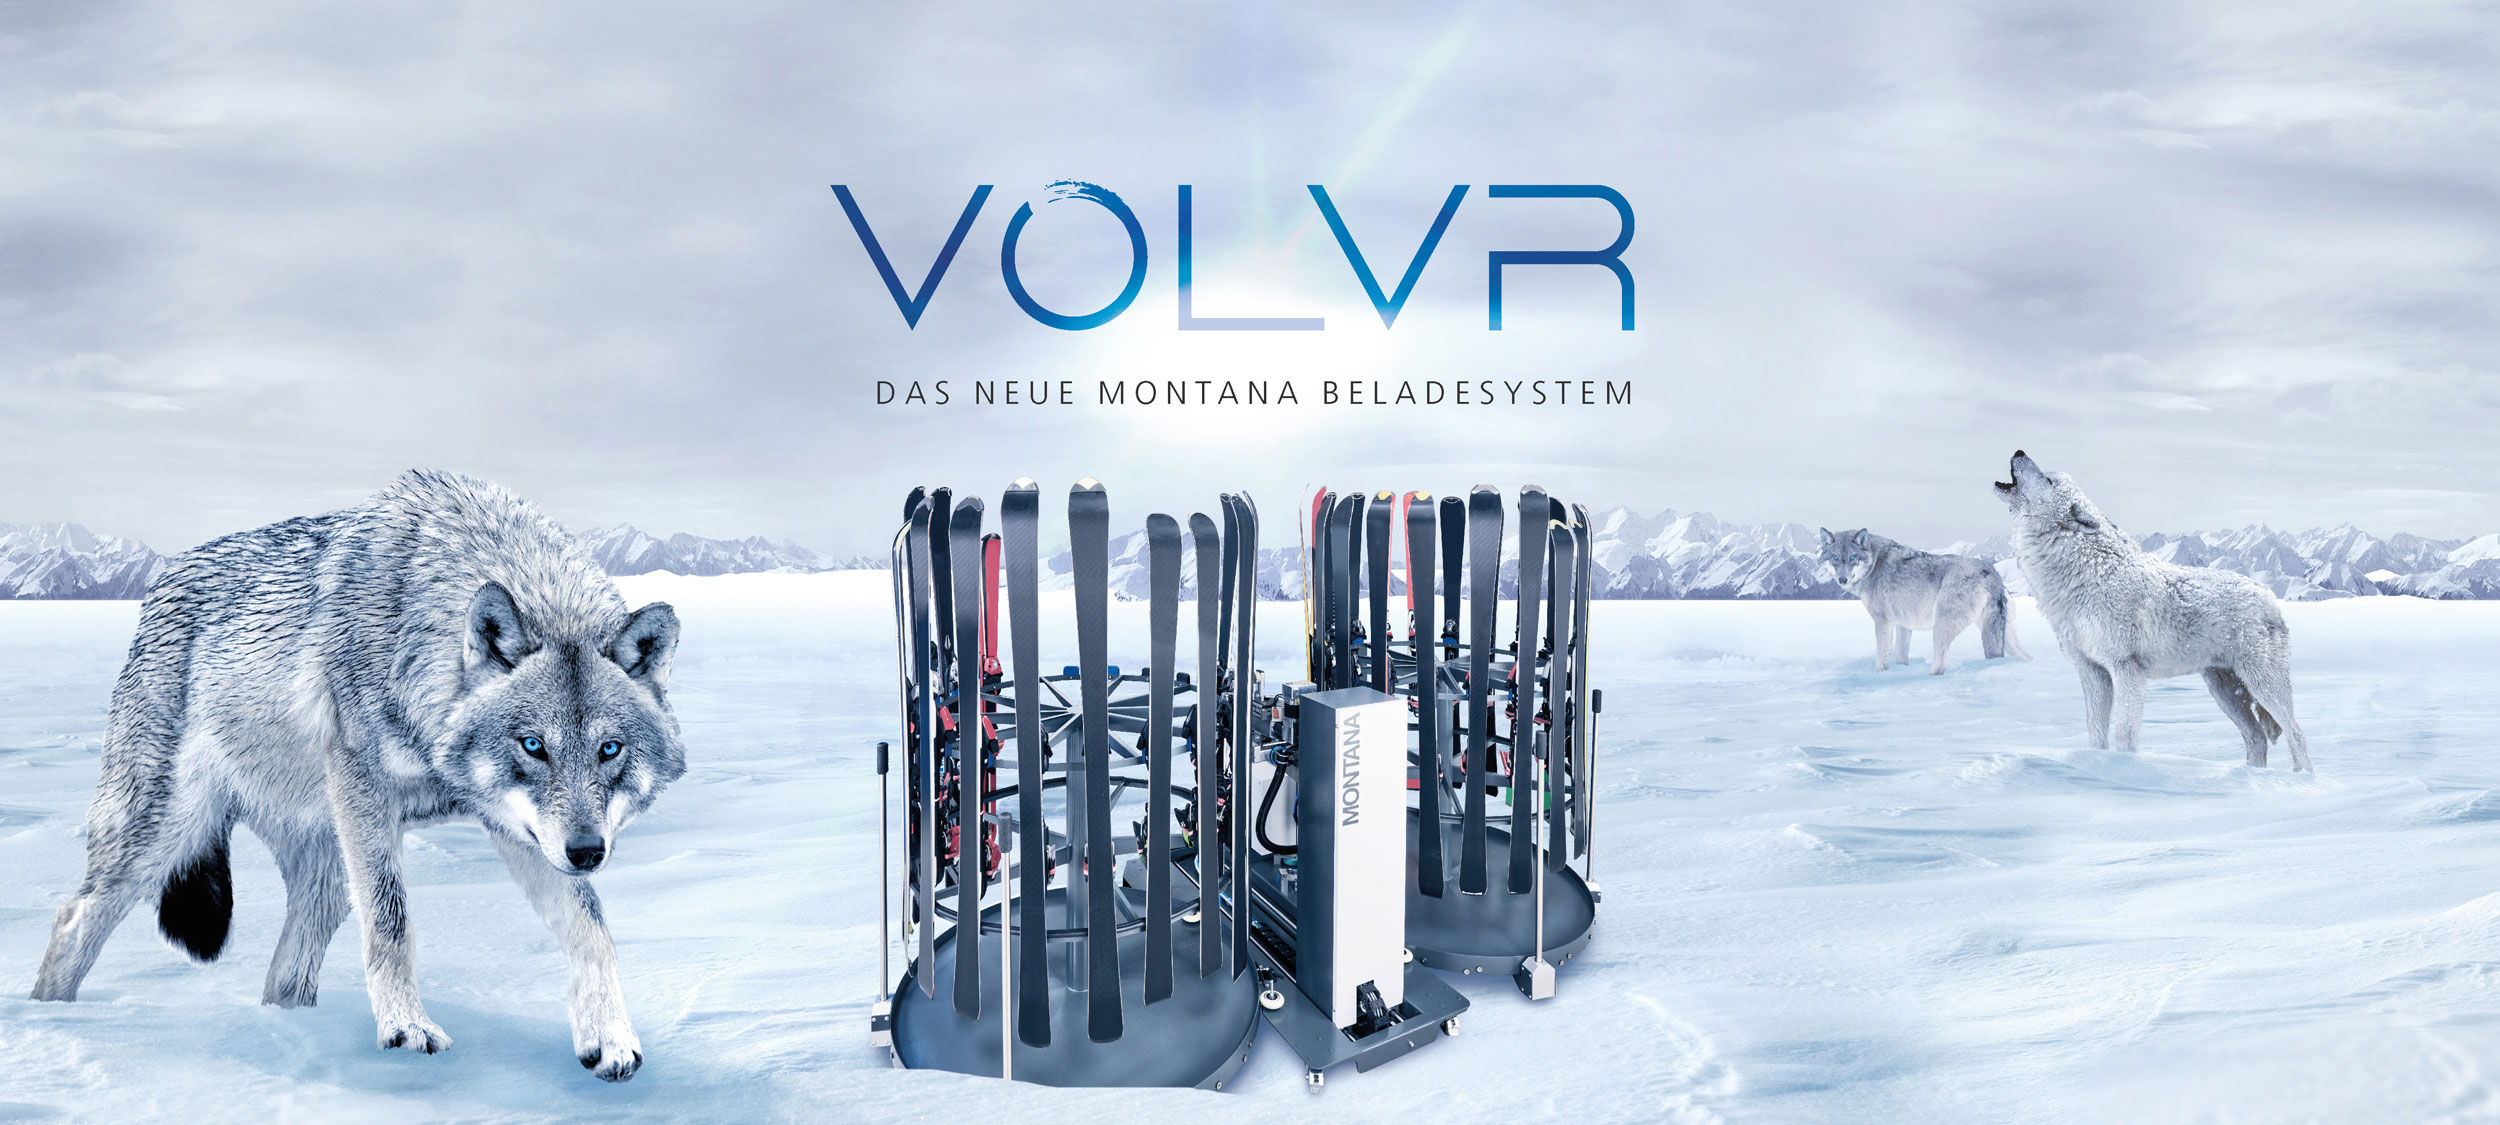 VOLVR Beladesystem für MONTANA Skiservice-Maschinen